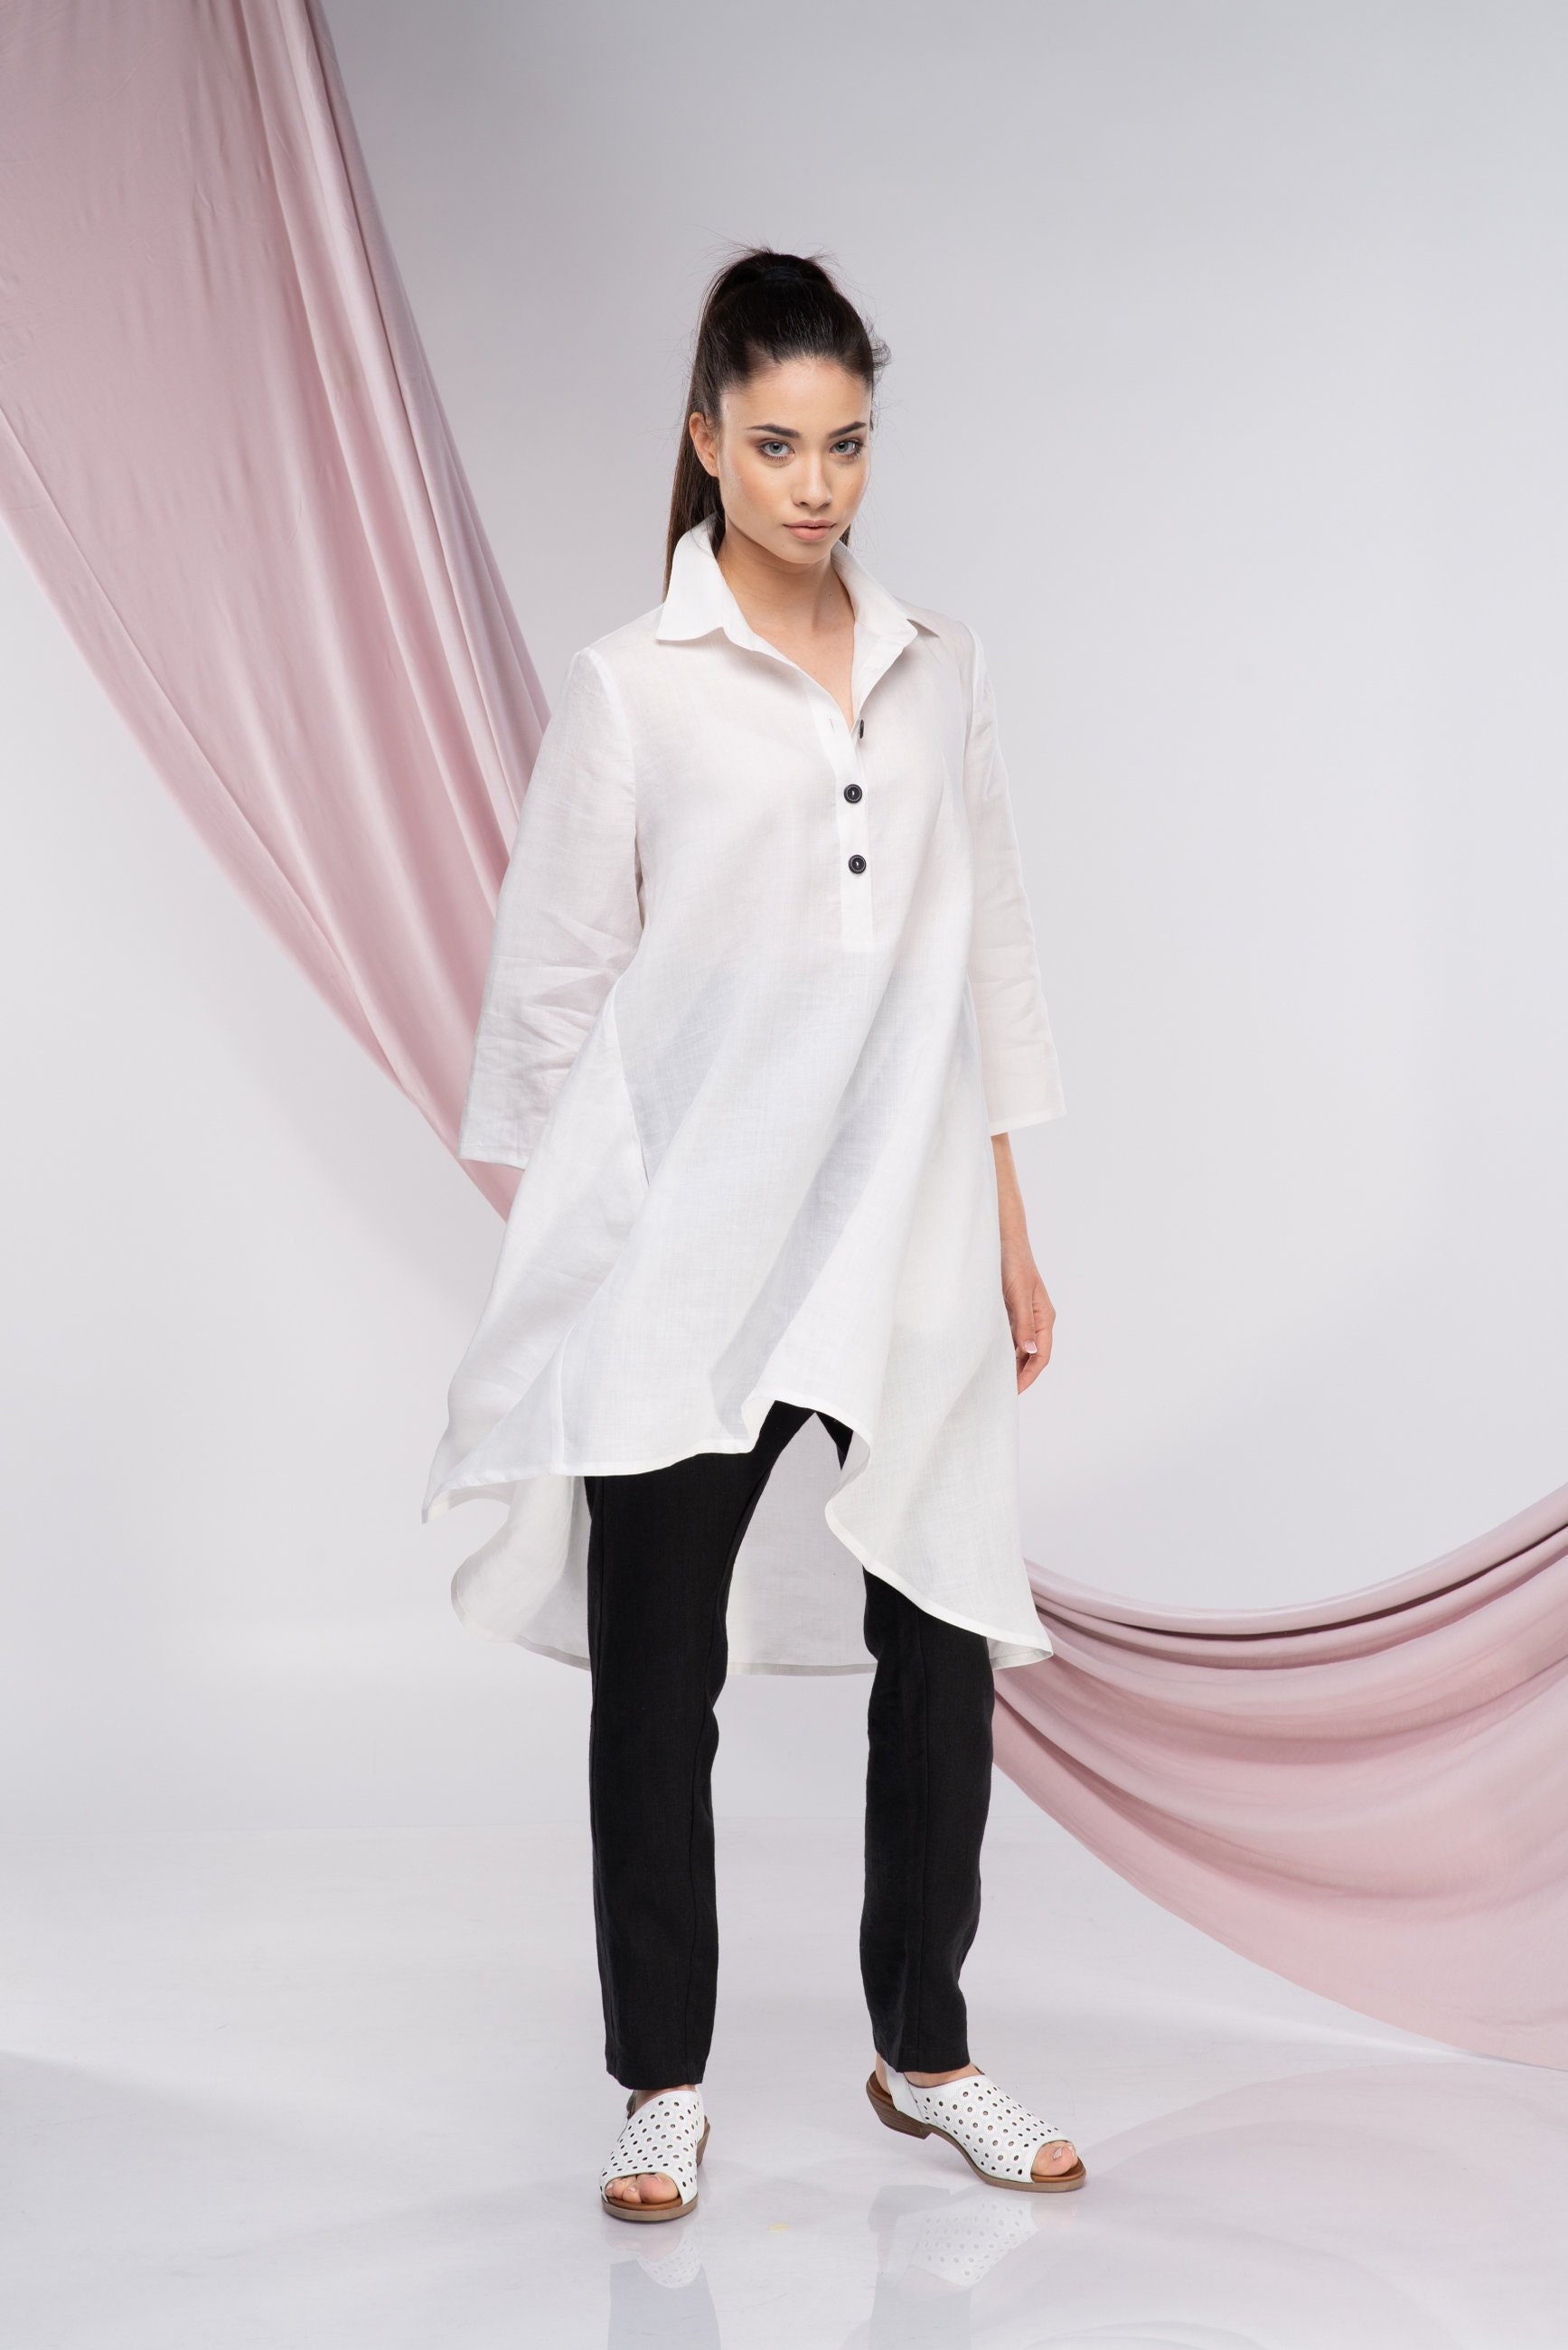 White Linen Tunic Shirt, Long Linen Tunic Tops for Women 